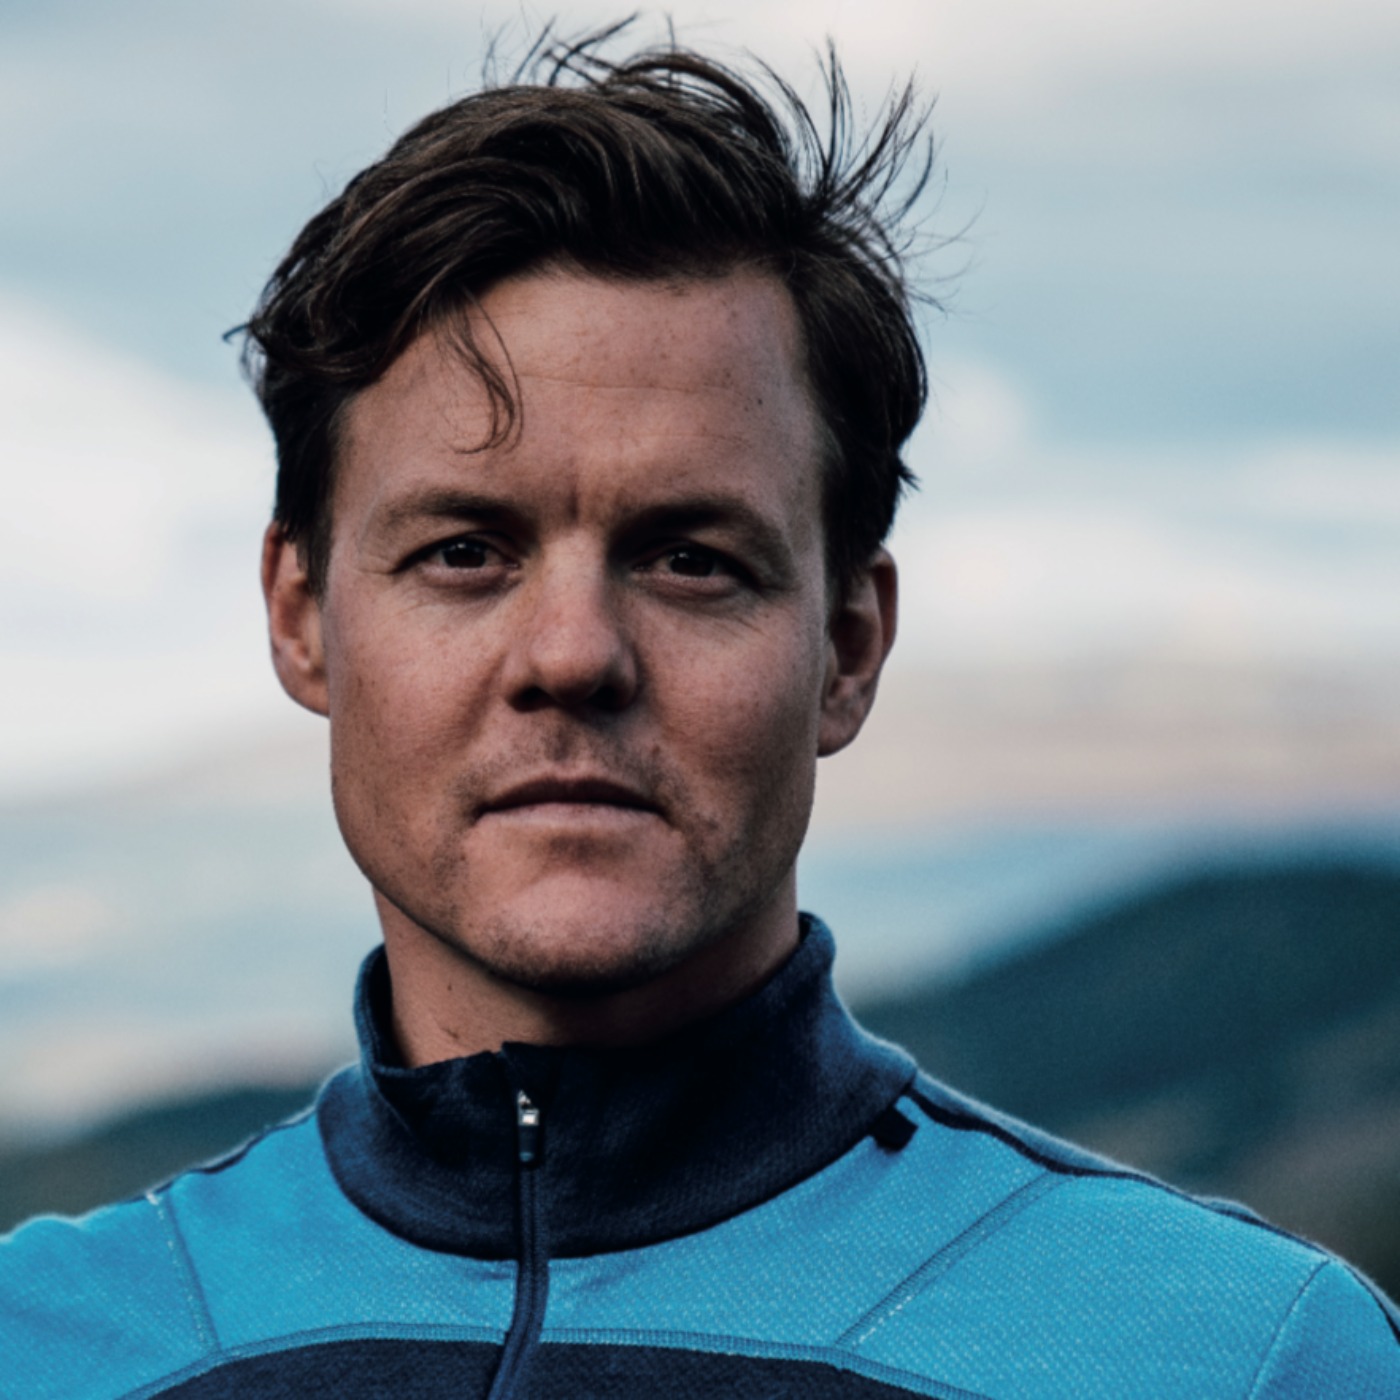 Mattias Hargin - Passionerad skidåkare om karriären och livsöden